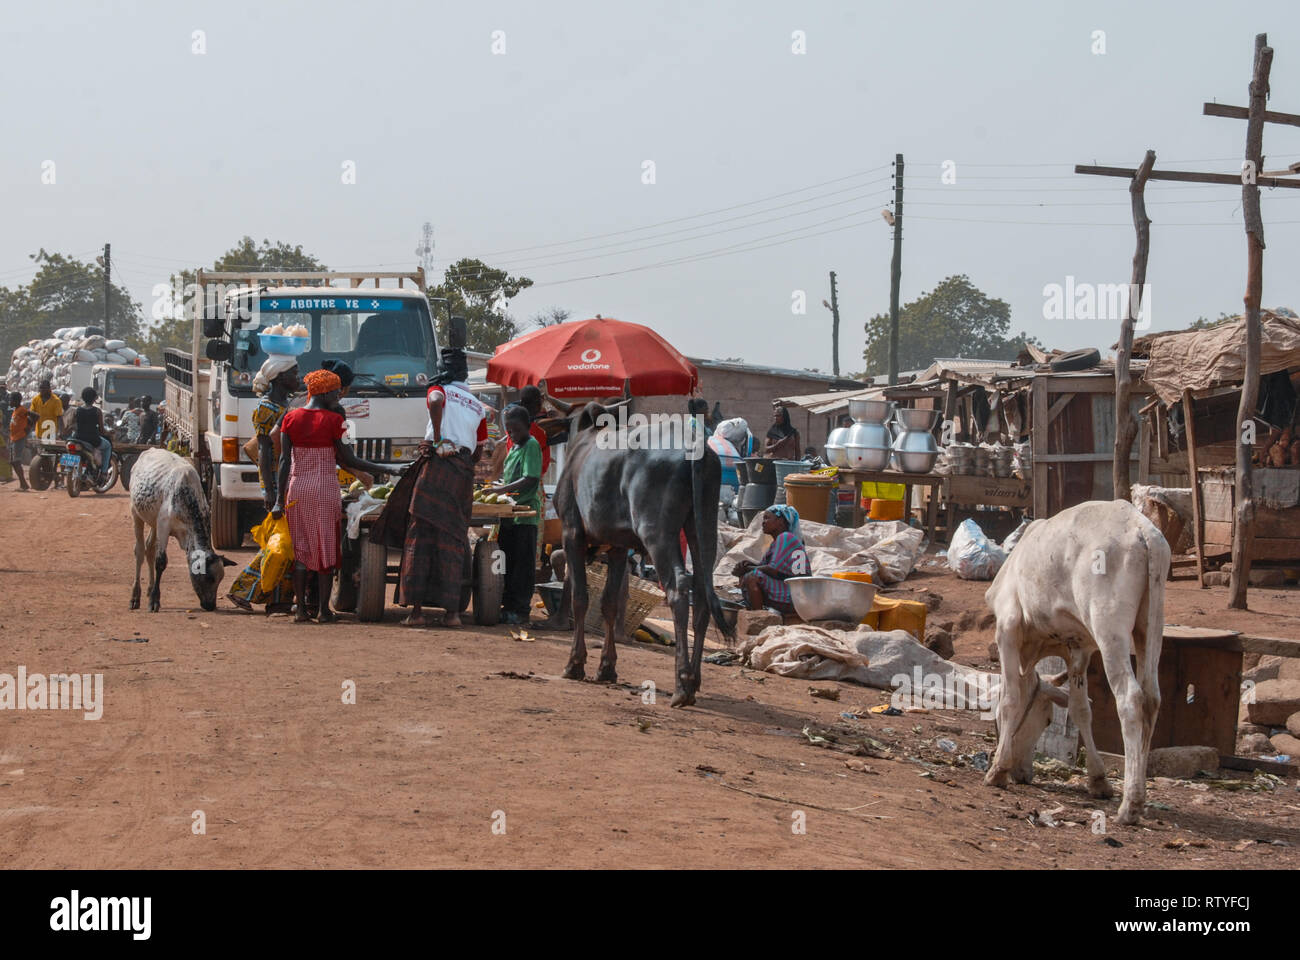 Une photo du vendeur de vente de divers produits (y compris le bétail, comme les chevaux et les ânes) à Bolgatanga (Bolga, Ghana, Afrique de l'Ouest Banque D'Images